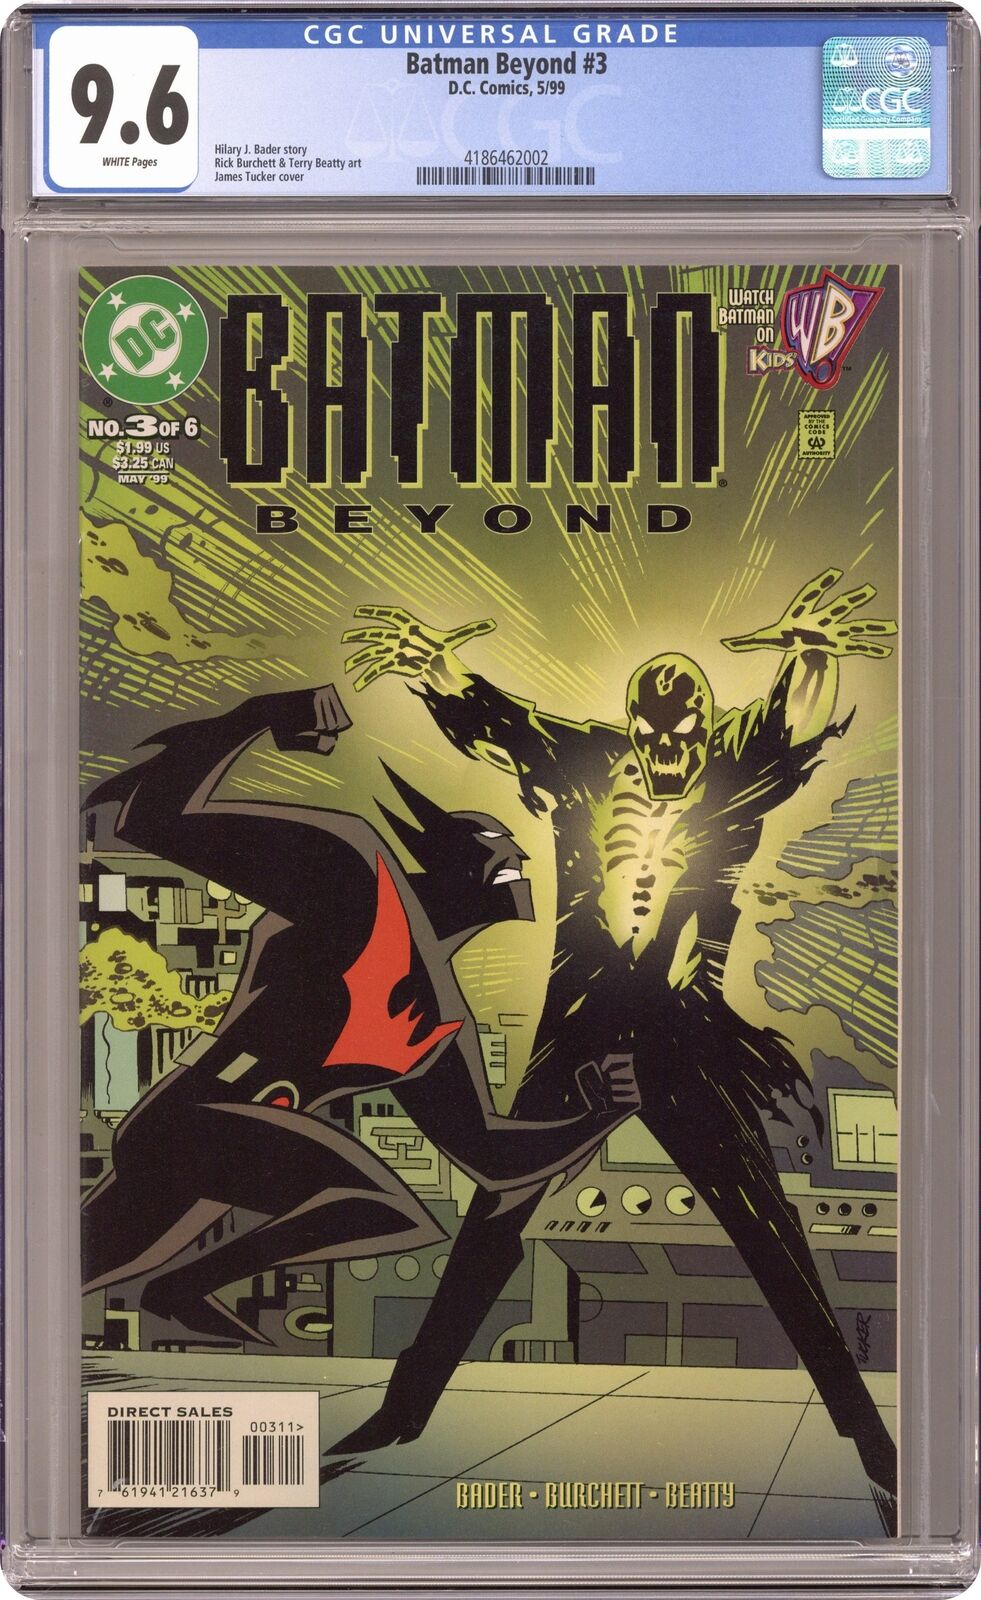 Batman Beyond #3 CGC 9.6 1999 4186462002